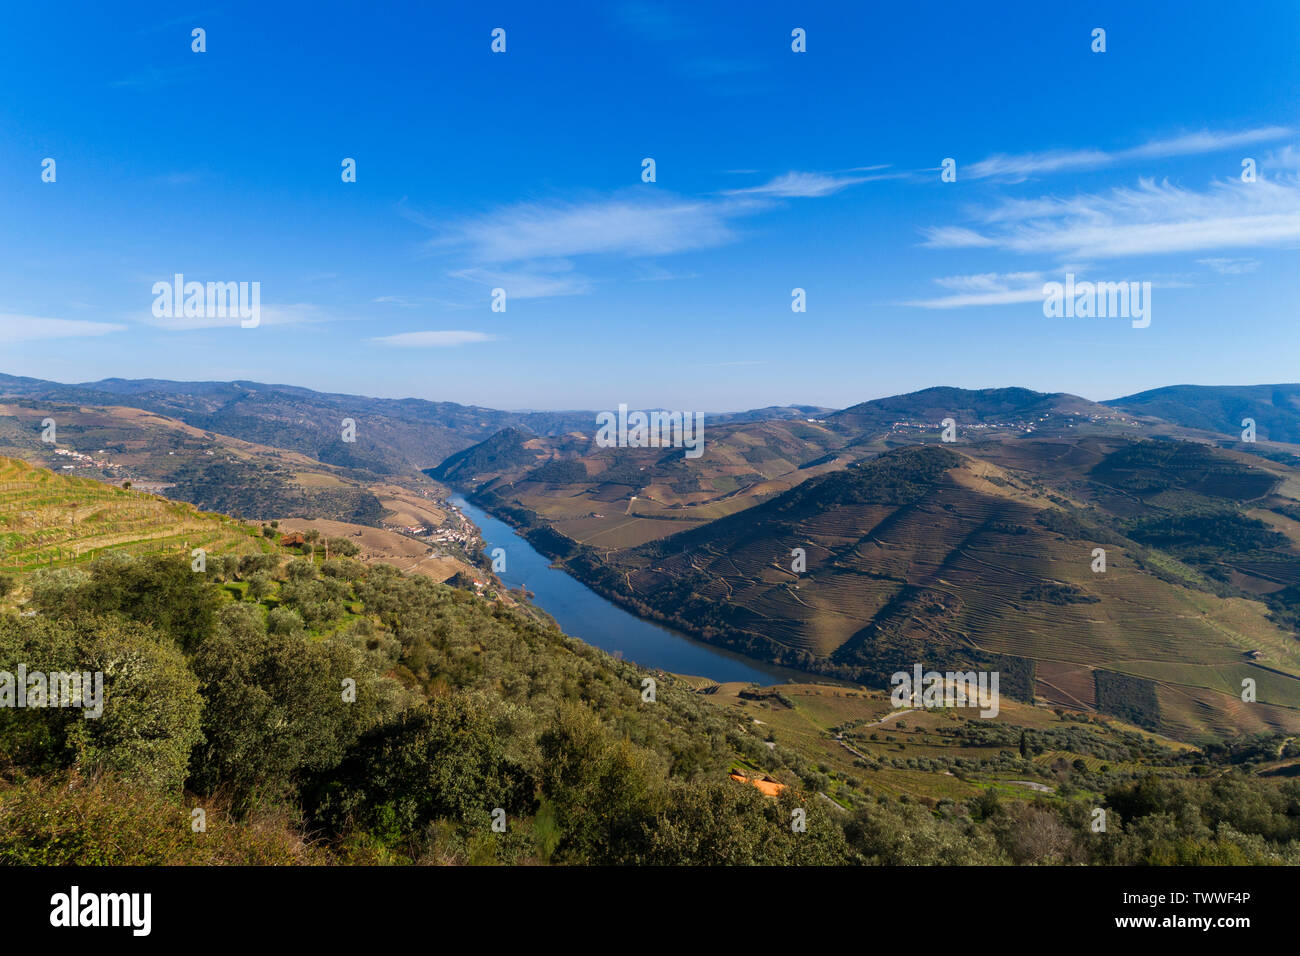 Vue aérienne de la pittoresque vallée du Douro et rivière avec vignobles en terrasses près du village de Tua, Portugal Banque D'Images